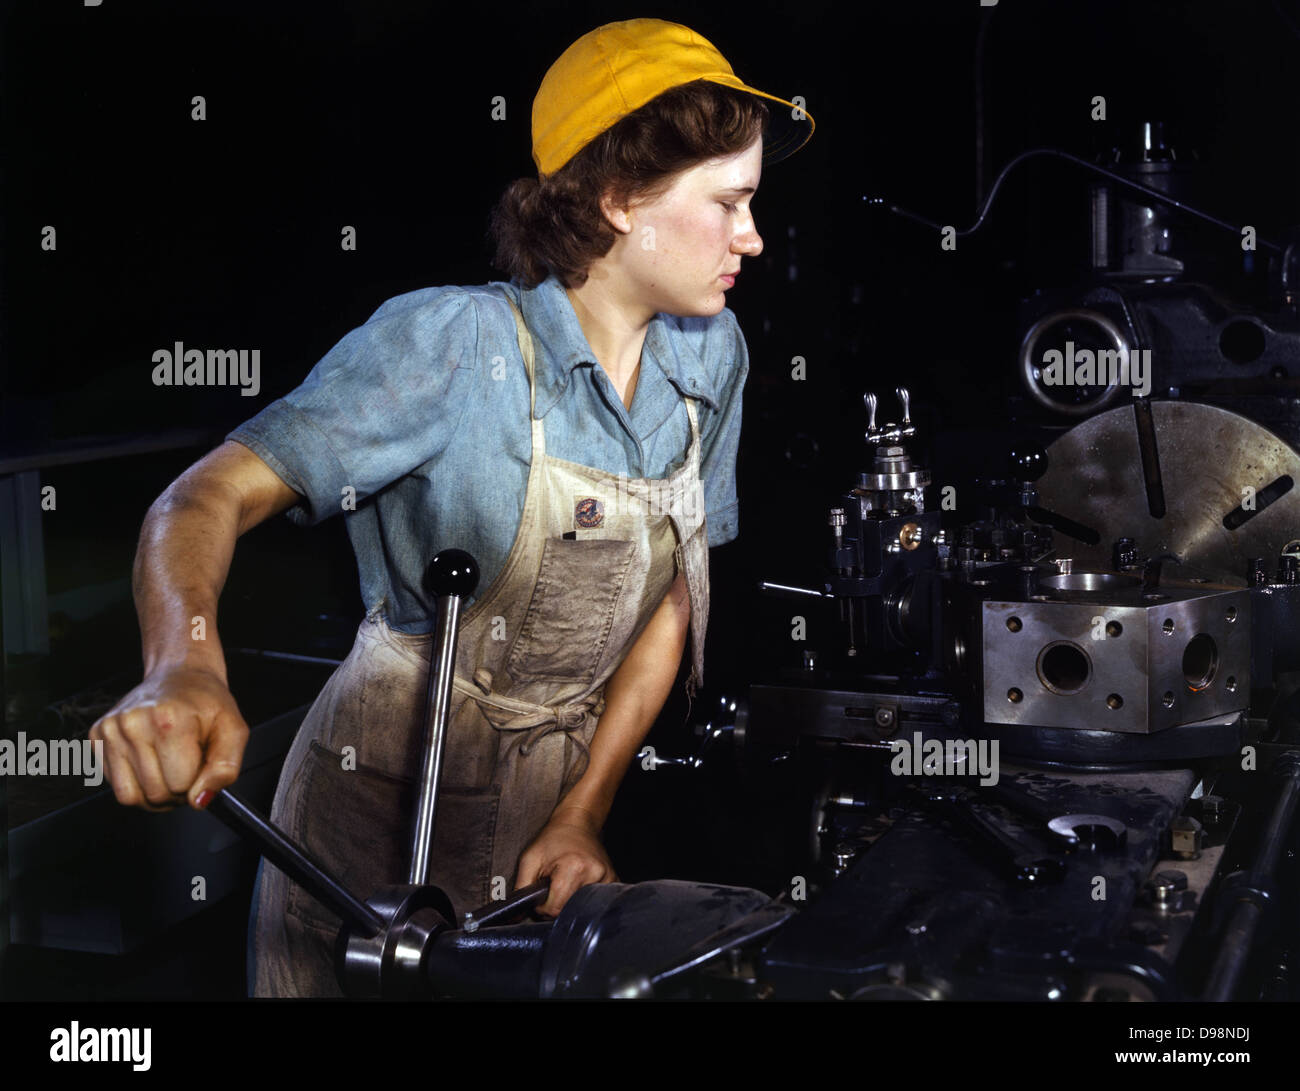 La Segunda Guerra Mundial: EE.UU. mujer trabajadora de la guerra en 1940. Las mujeres durante la guerra en el frente doméstico asumió muchas tareas desempeñadas tradicionalmente por hombres. Foto de stock